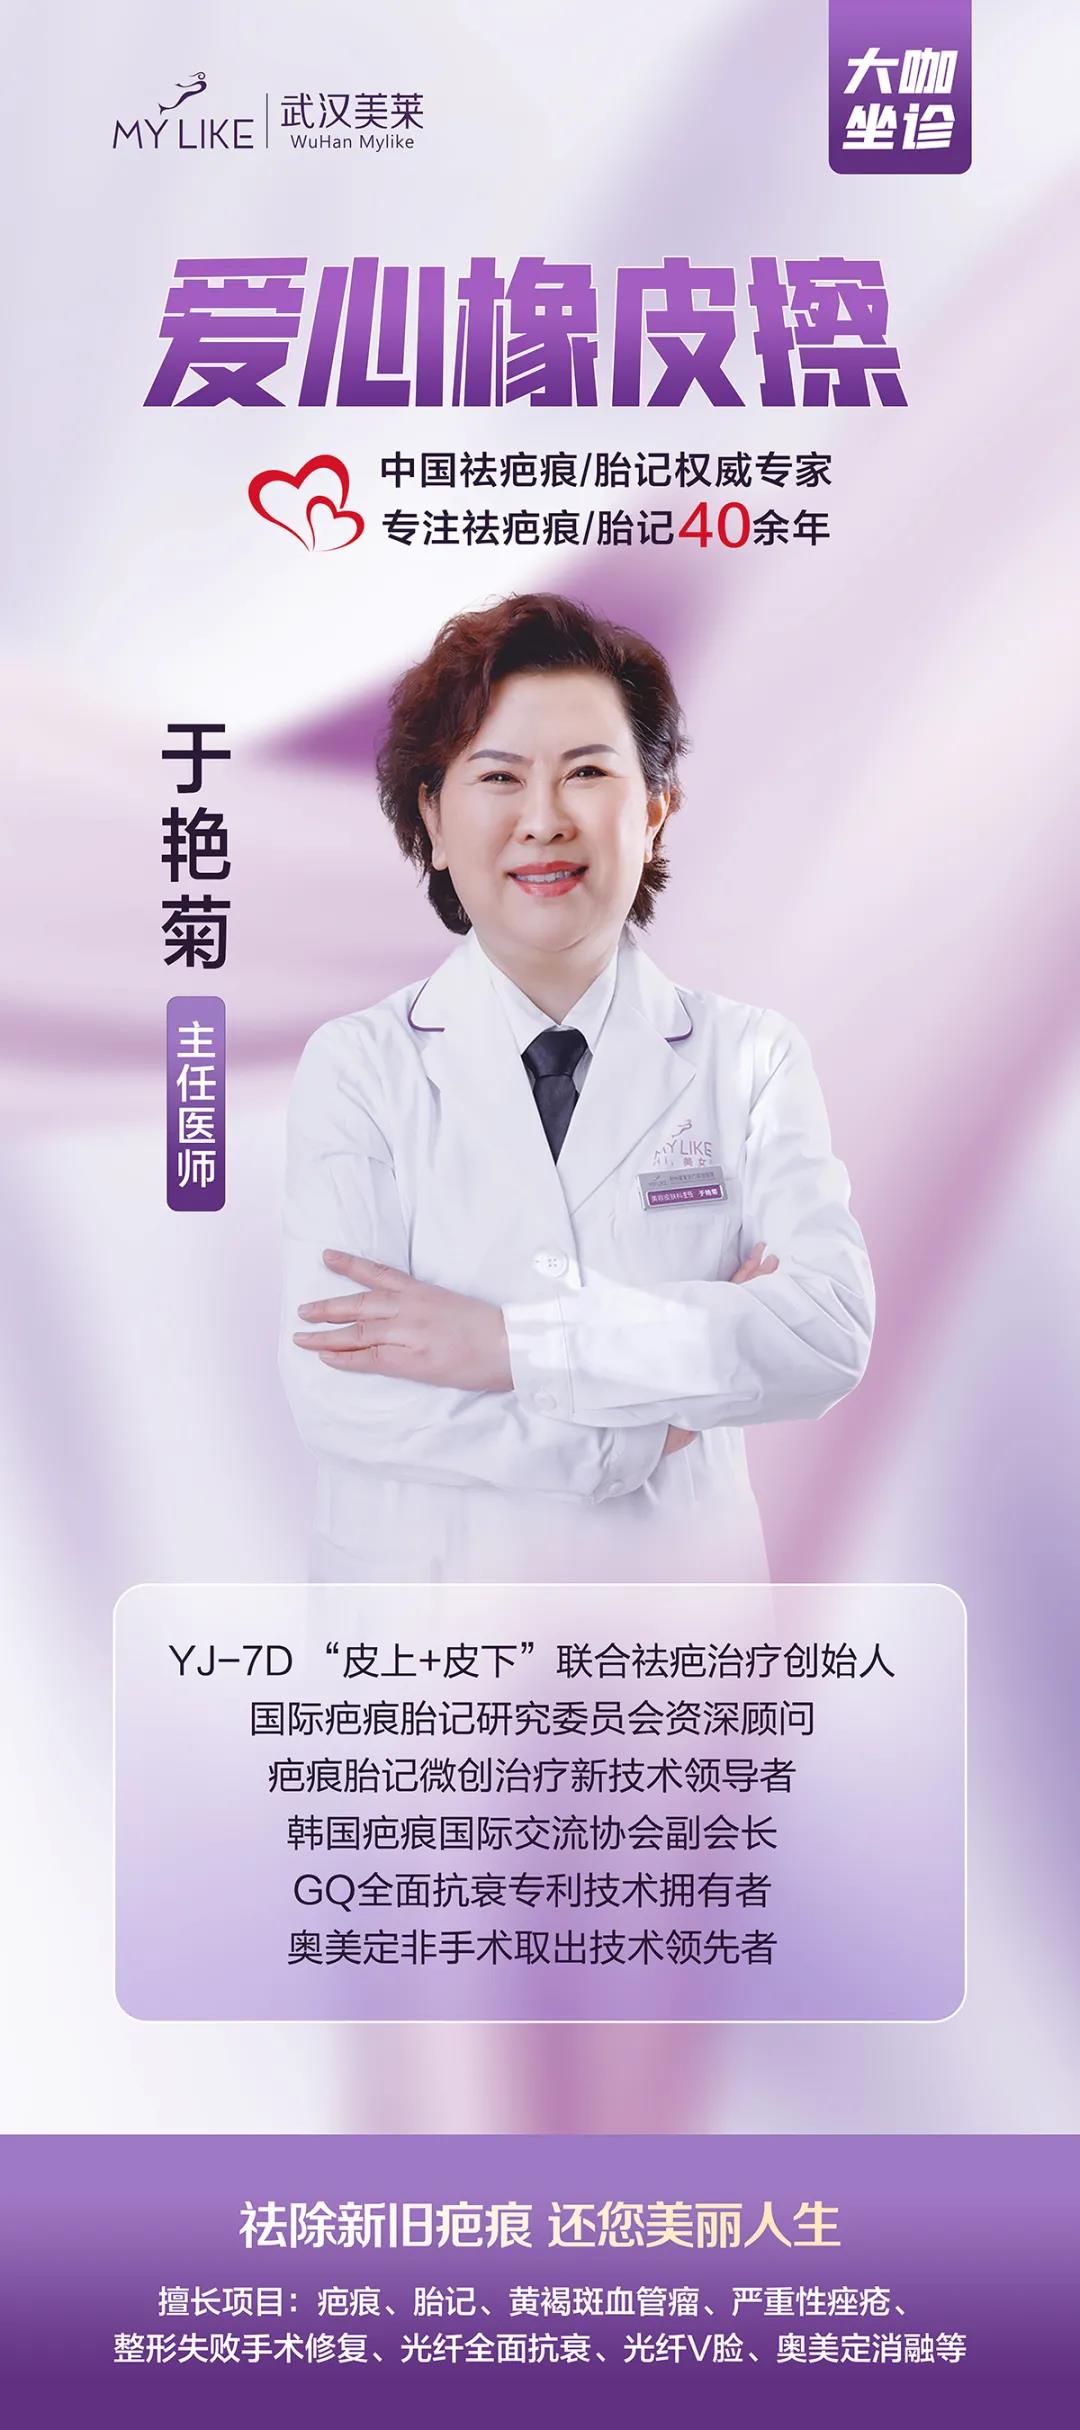 武汉美莱美容医院，于艳菊教授坐诊时间4月15日-18日